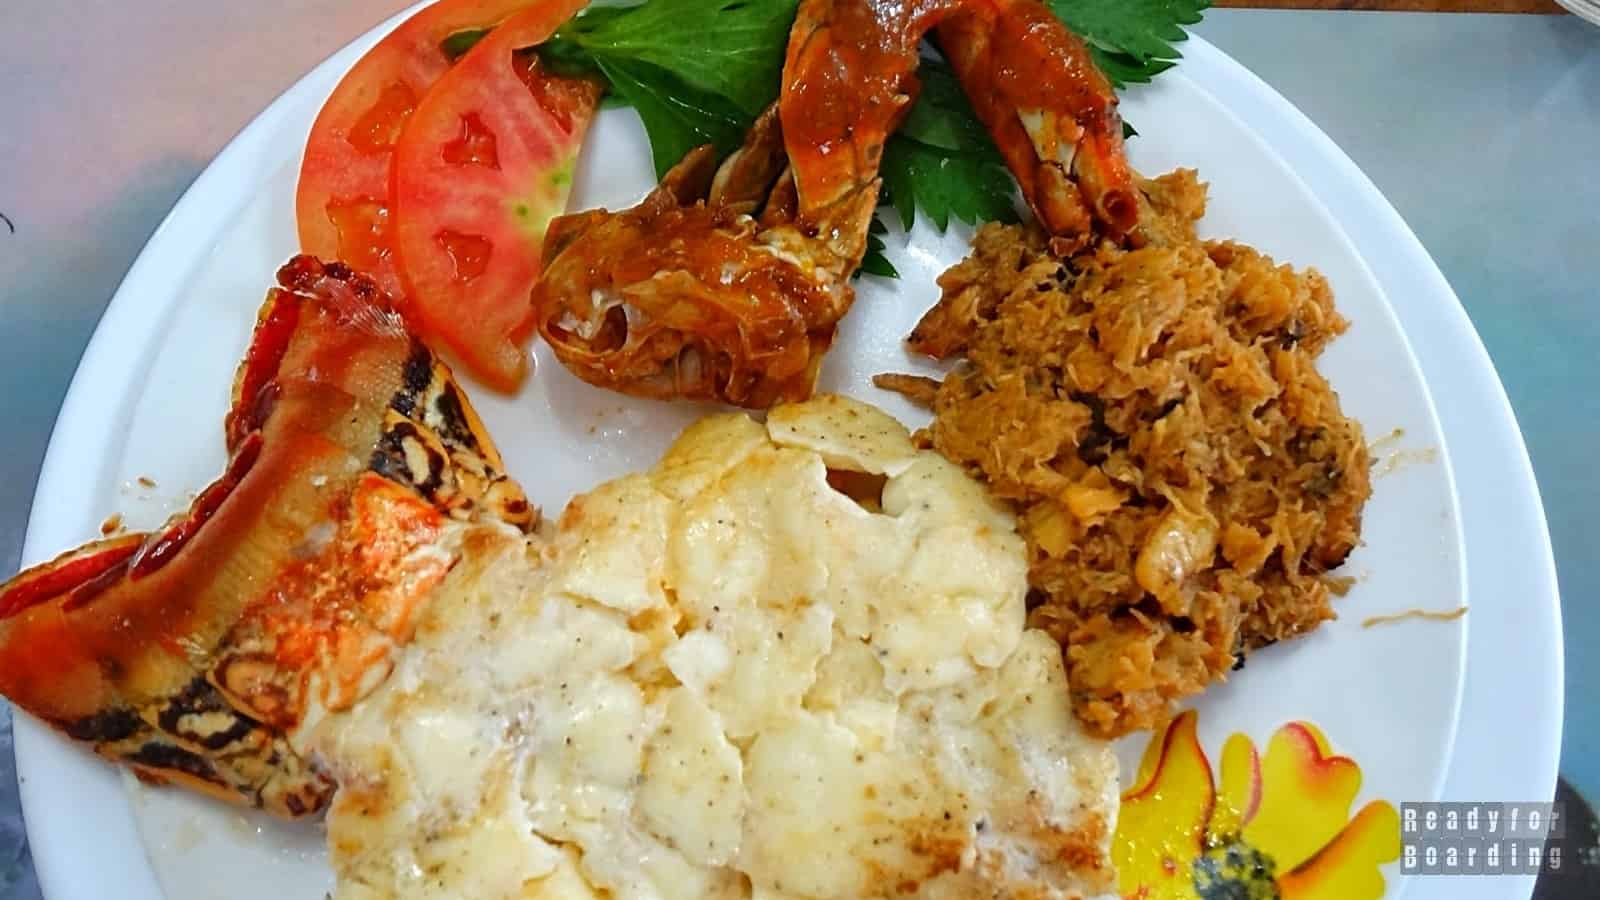 Lobster for dinner in Playa Larga - Cuba